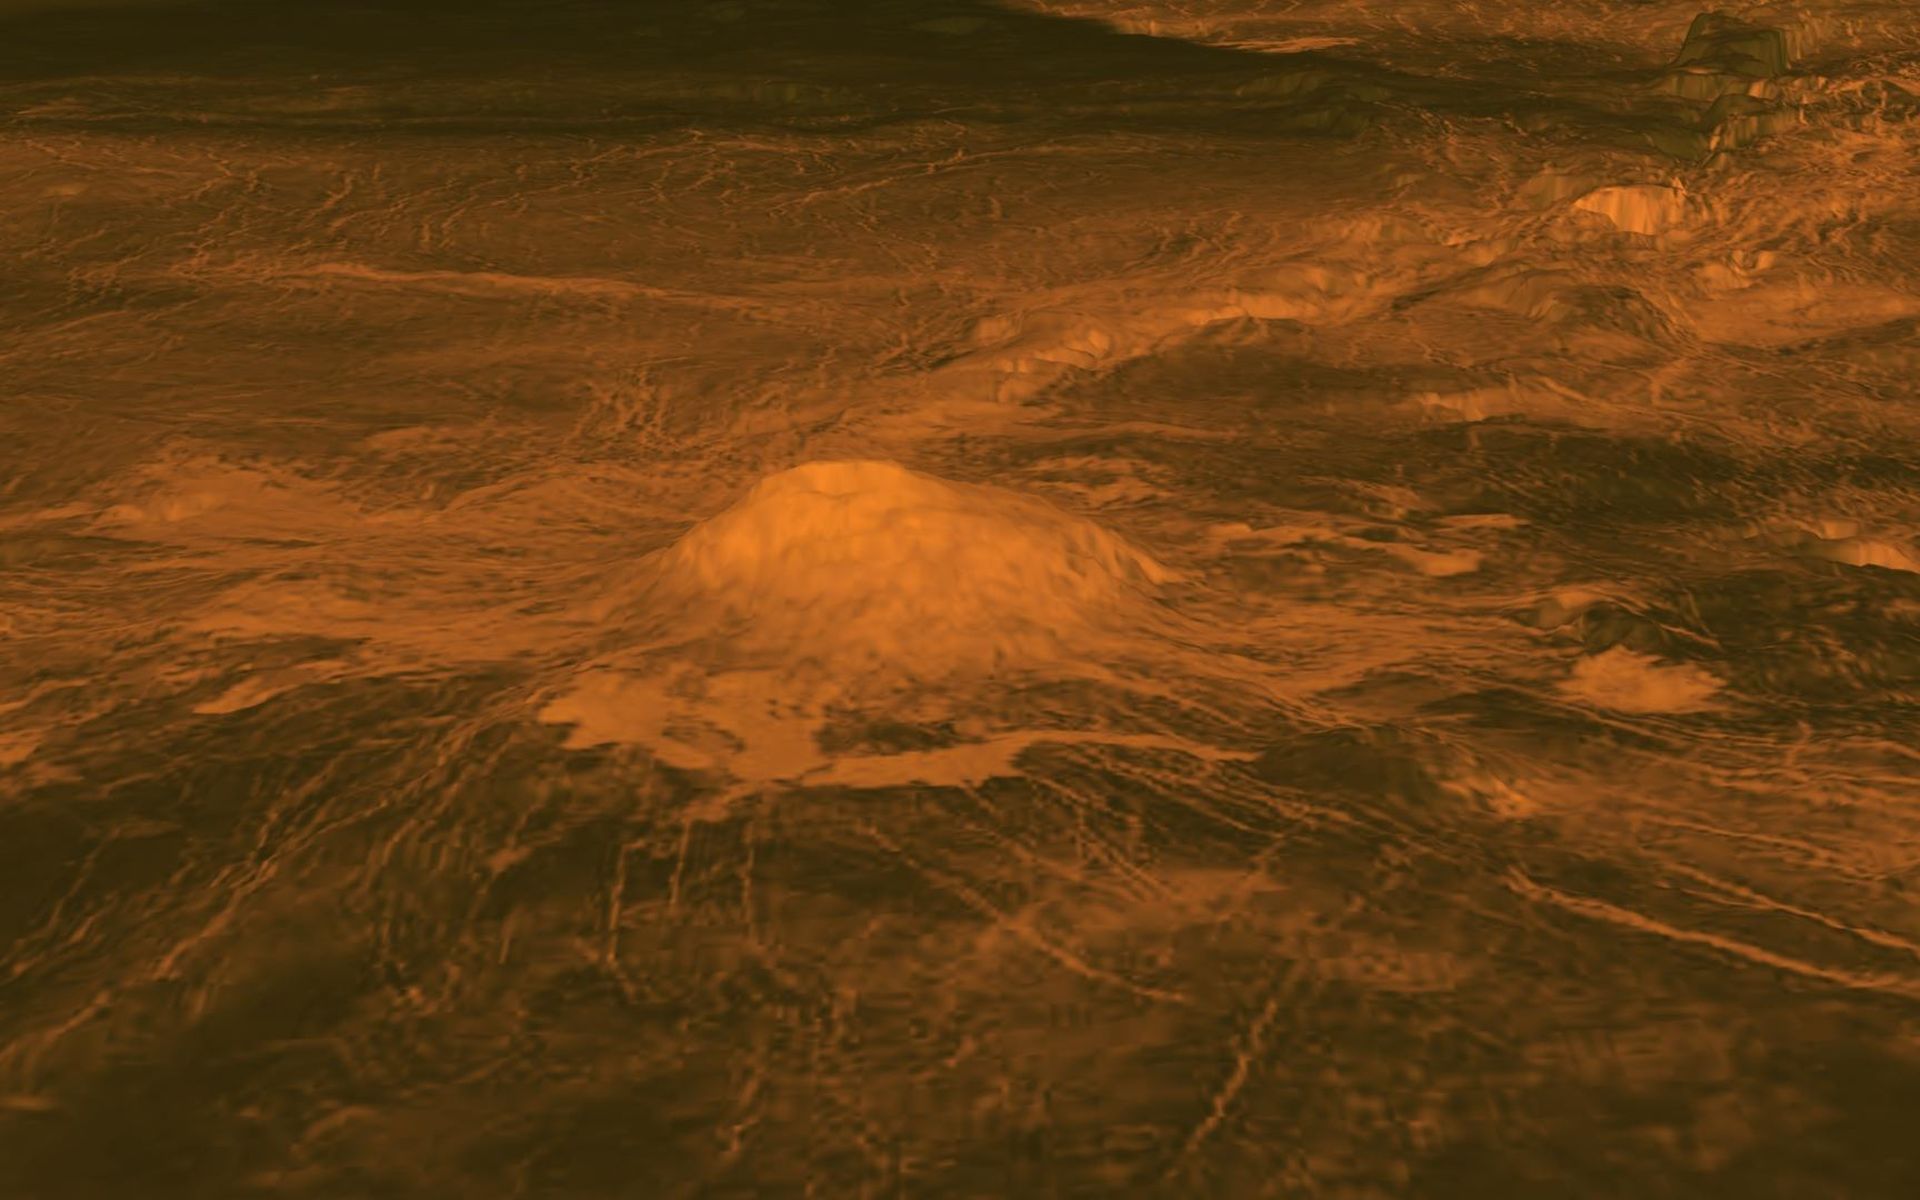 عکس هوایی از بزرگترین آتشفشان سیاره ناهید یا زهره